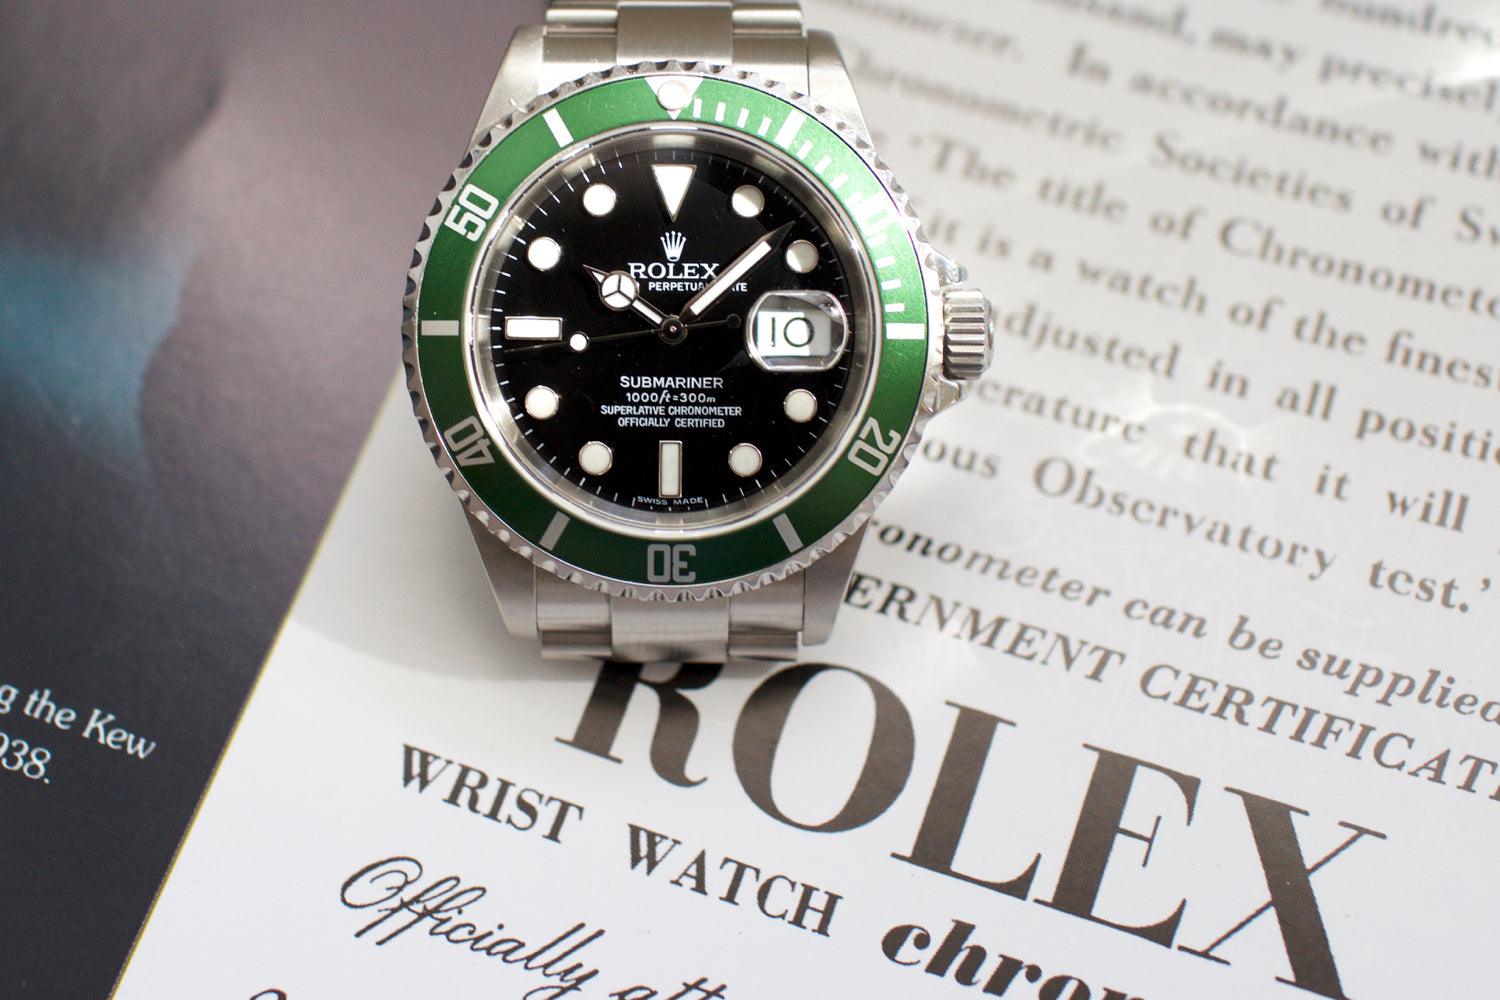 SOLDOUT: Rolex Submariner Date 50th Anniversary "Kermit" 16610LV - WearingTime Luxury Watches